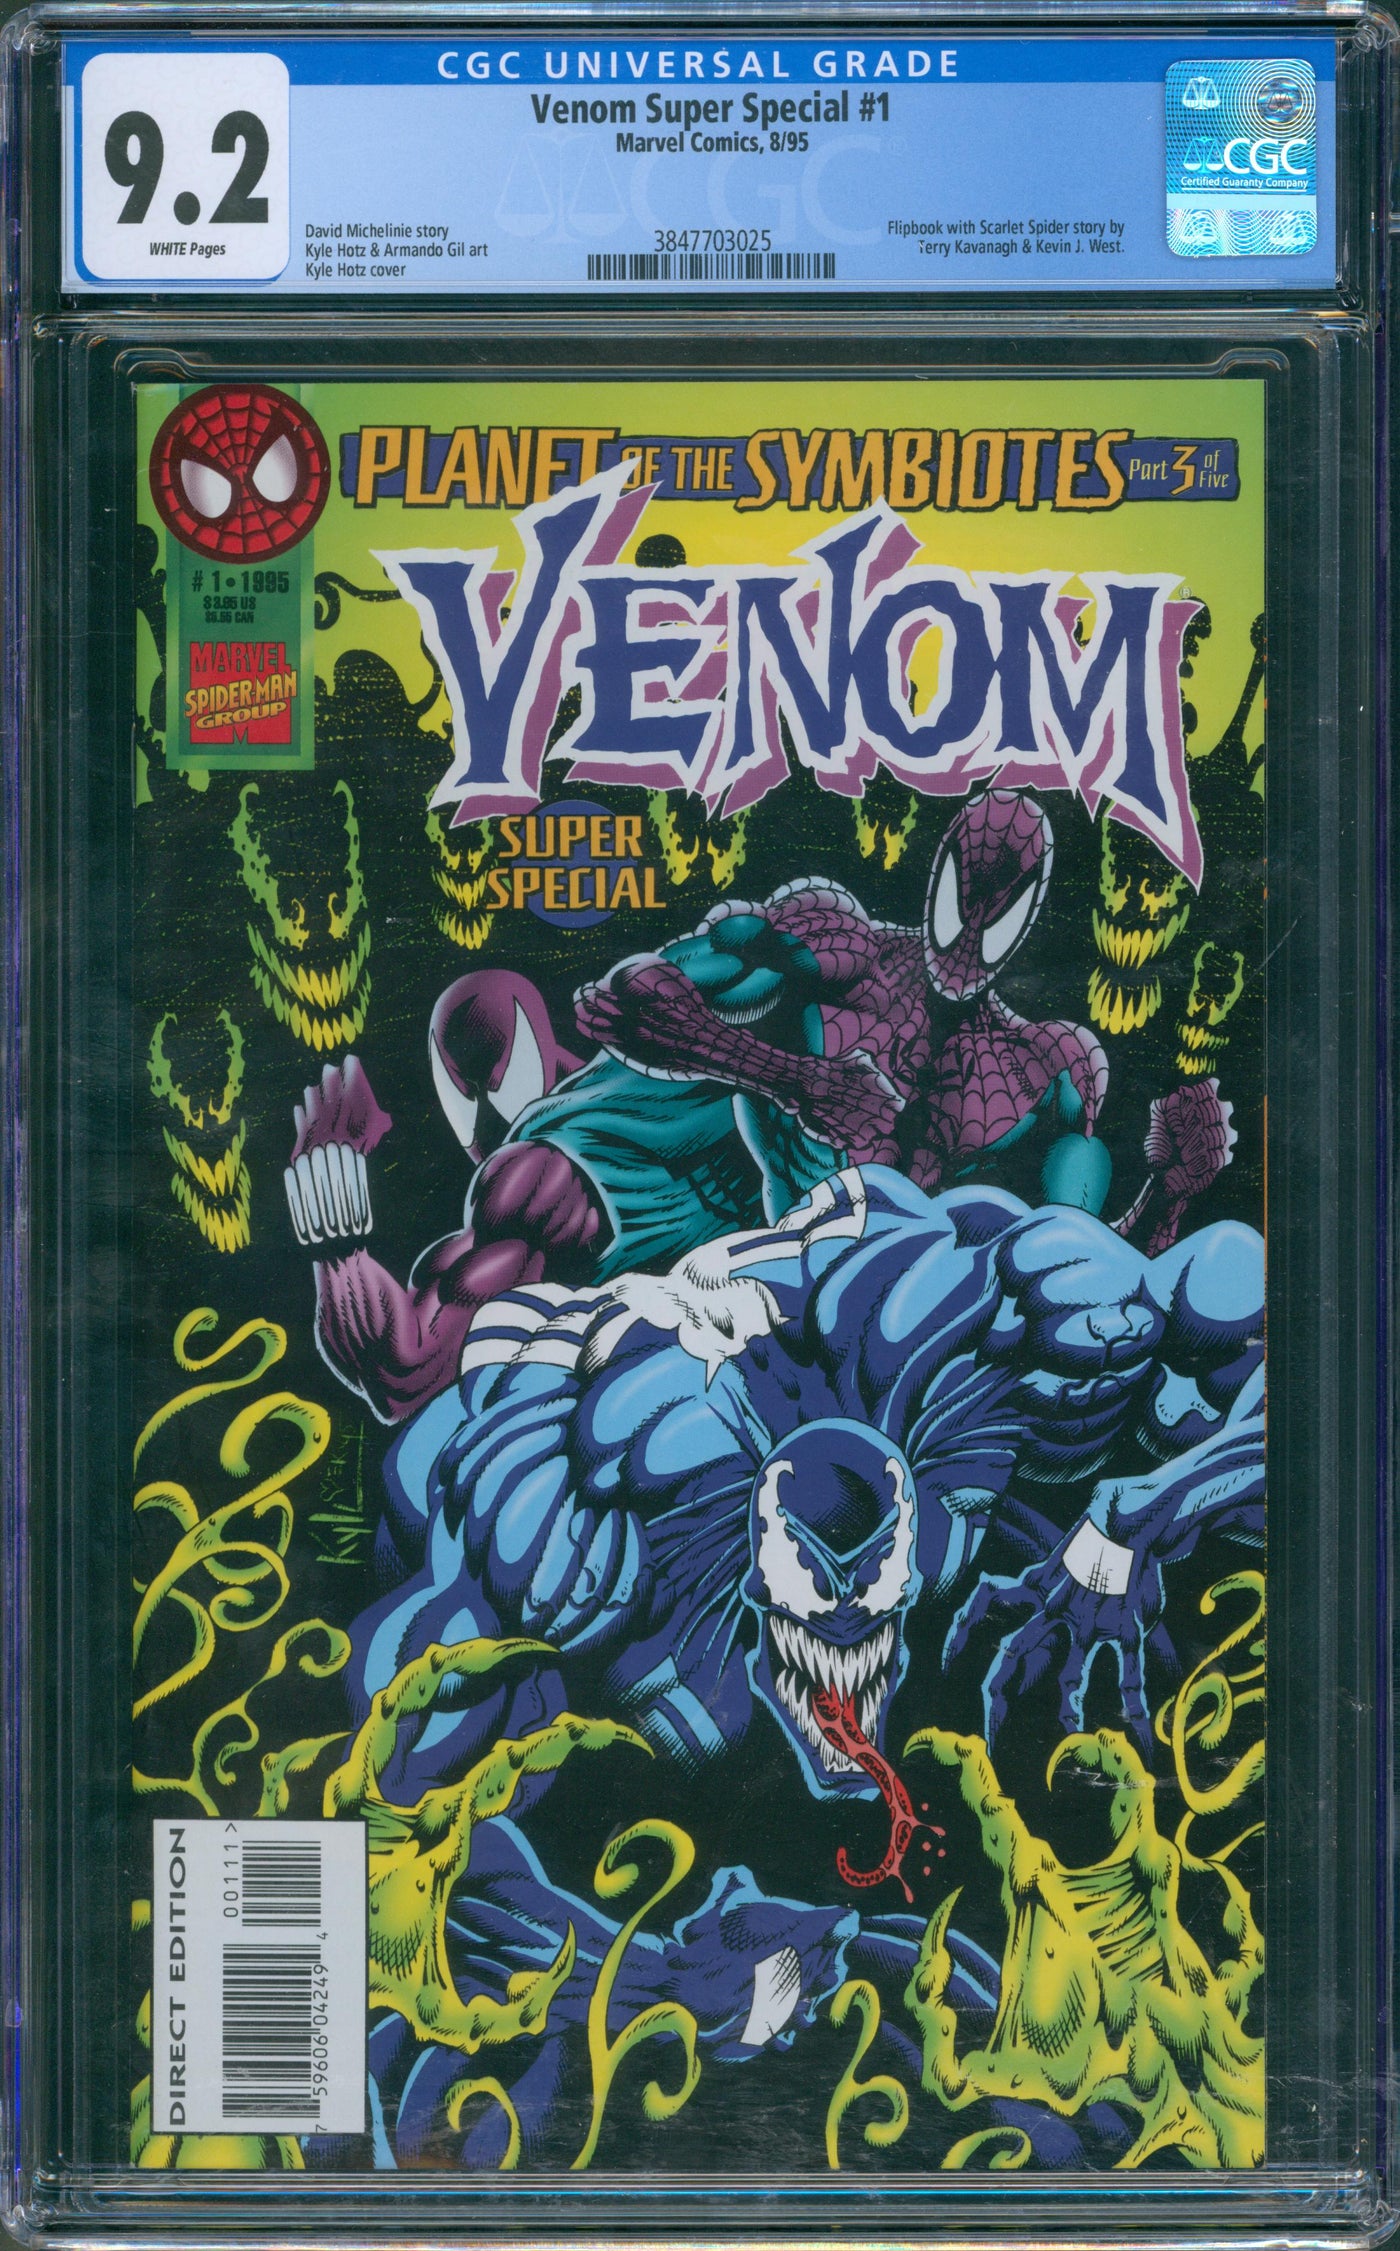 Venom Super Special #1 CGC 9.2